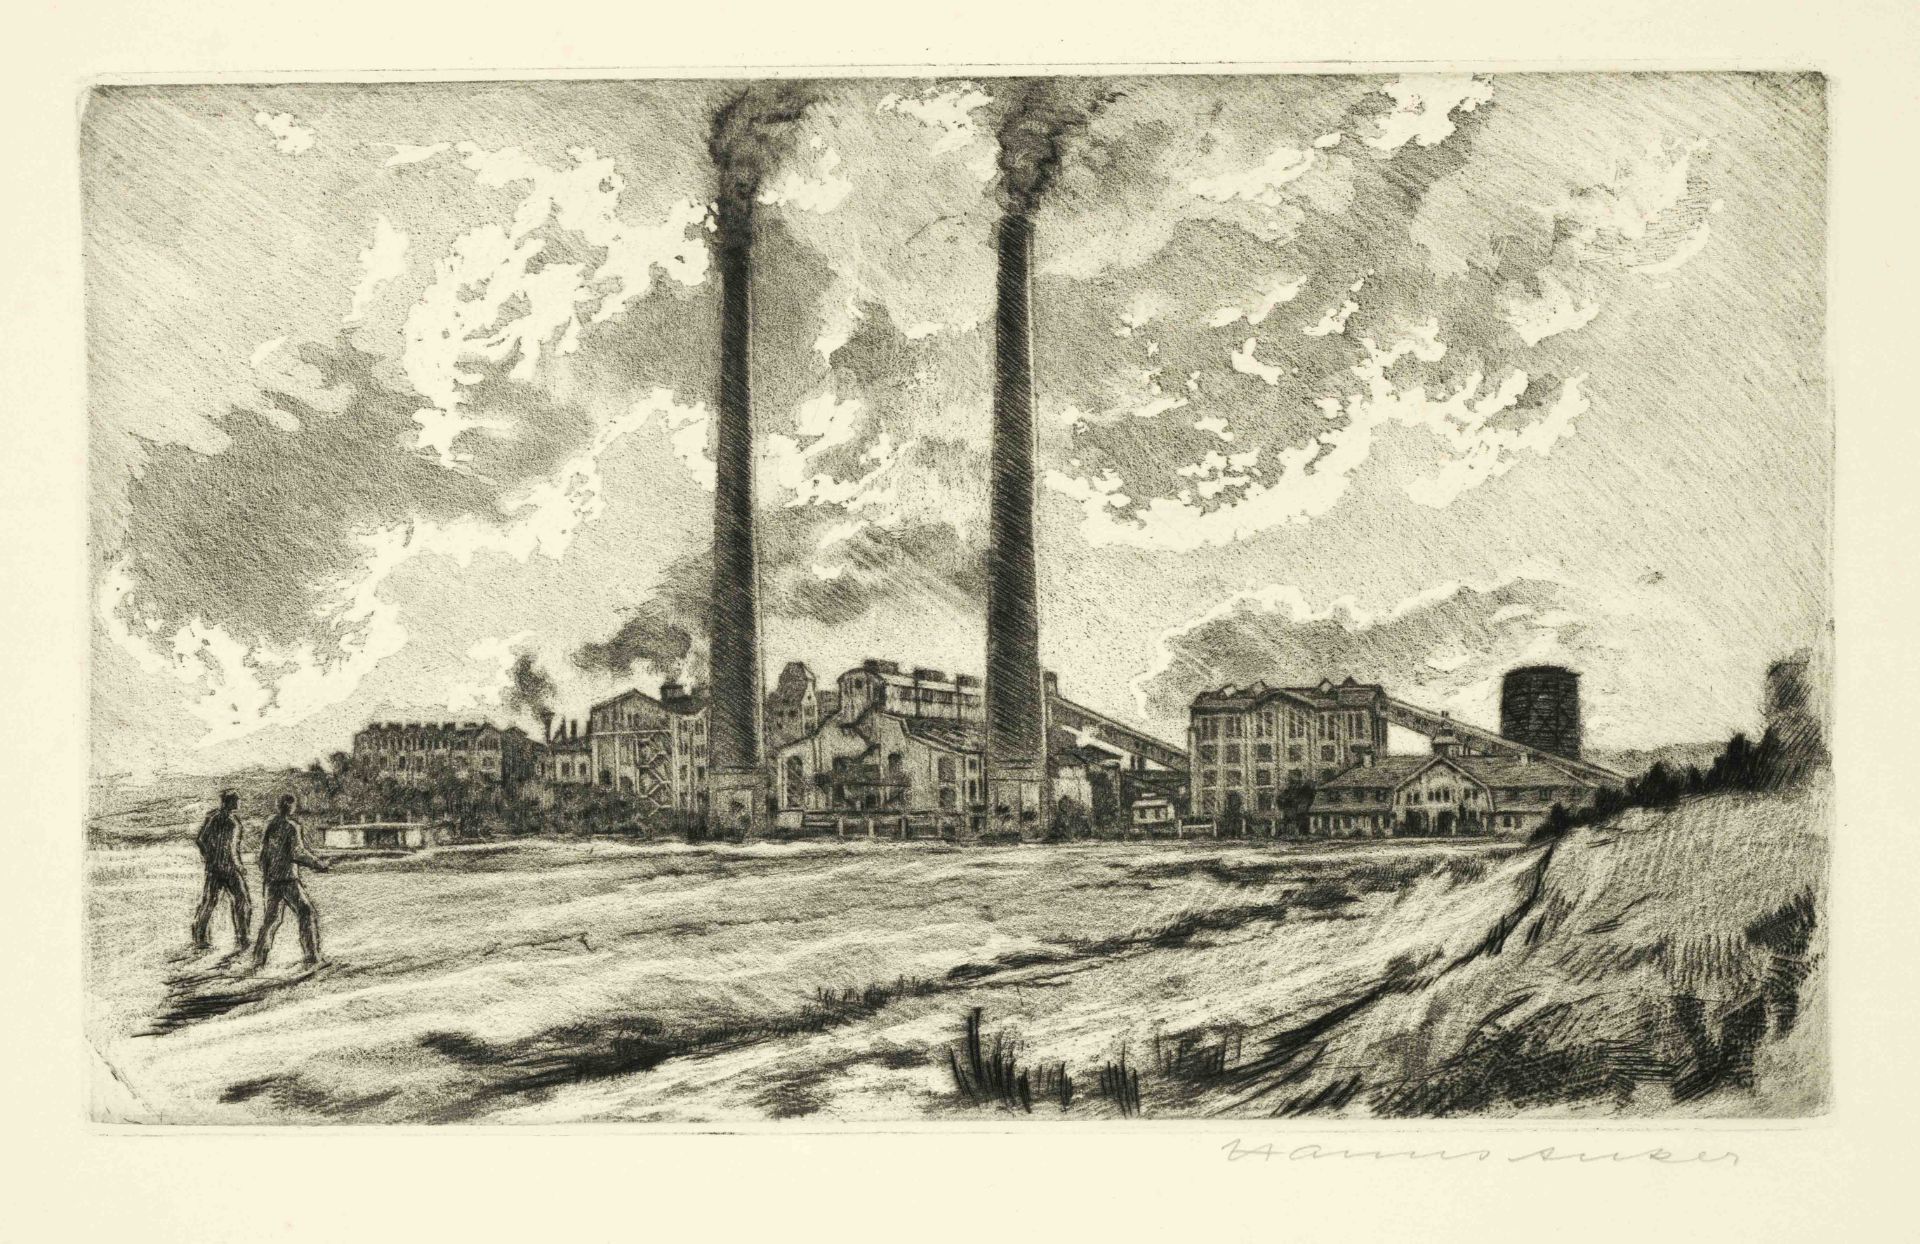 Hanns Anker (1873-1950), portfolio on mining, ''Braunkohle und Brikett, 25 Jahre Bubiag'', with 13